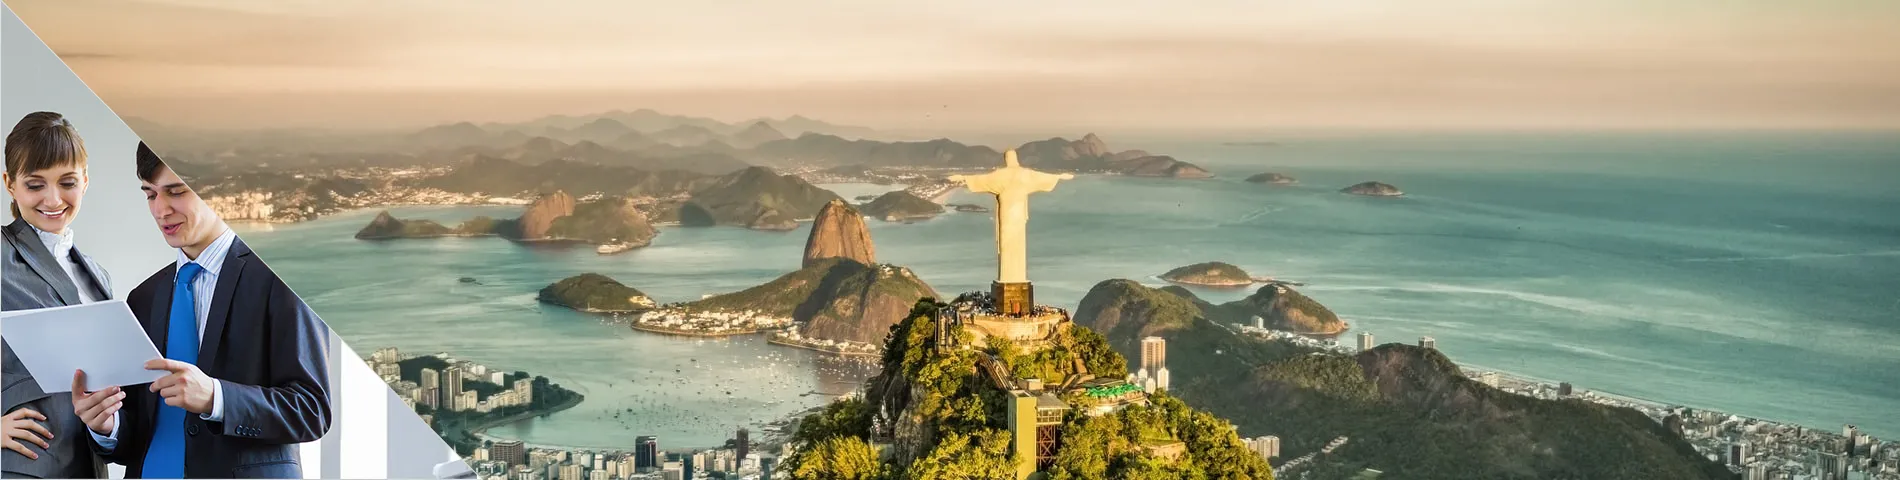 Rio de Janeiro - Business One-to-One